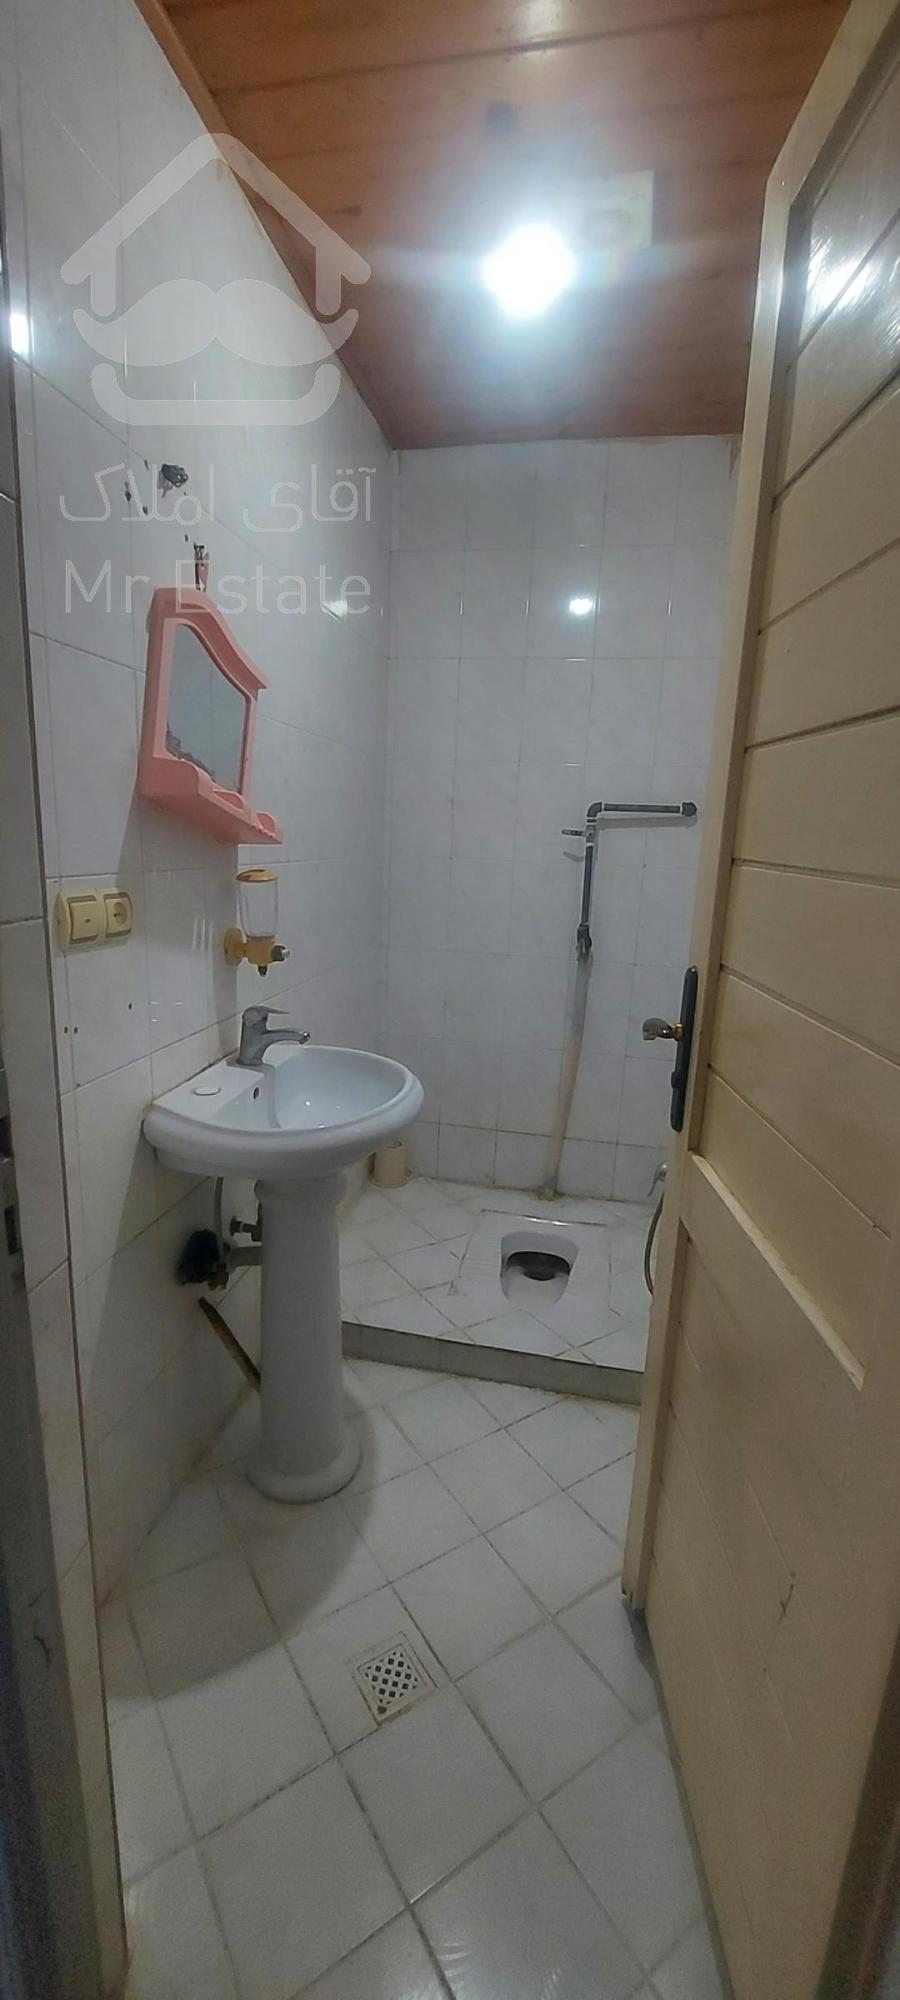 مازندران ، رویان ، واحد  تک خواب ، سرویس توالت و حمام جدا ، کف سرامیک ، بالکن دارد، طبقه اول، کمد دیواری ، کولر پنجره ای